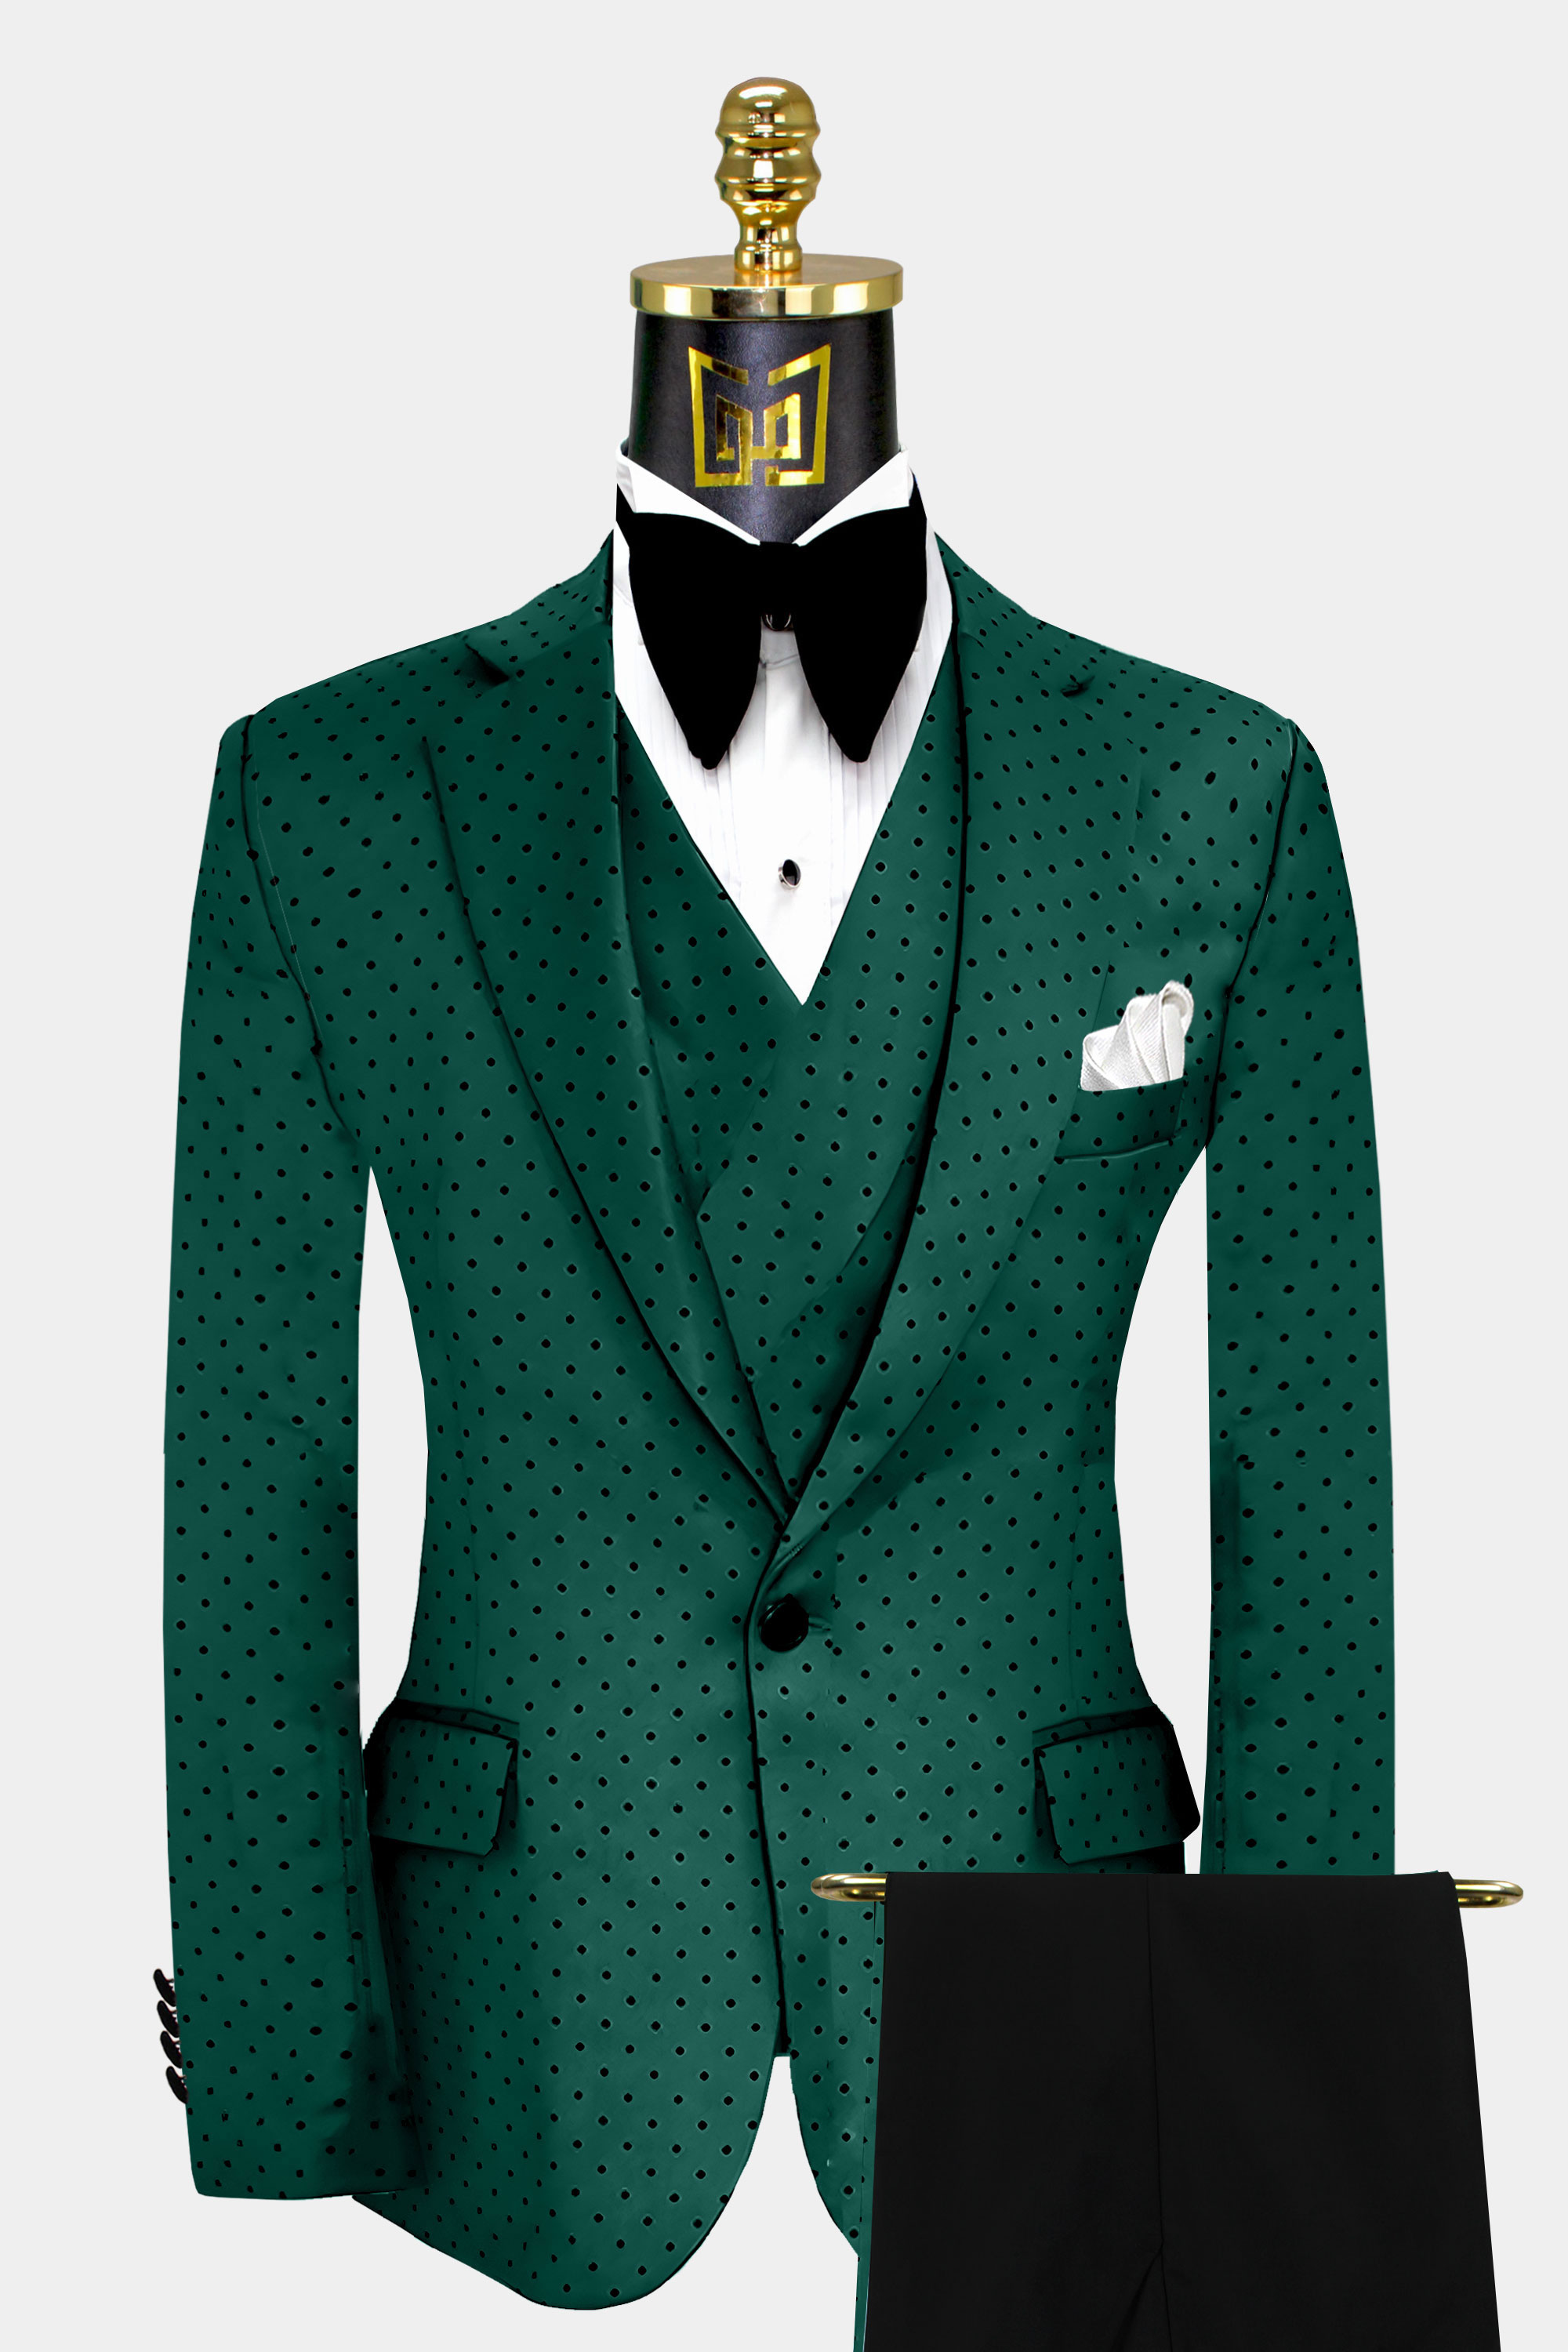 Black-and-Green-Polka-Dot-Suit-Wedding-Groom-Tuxedo-from-Gentlemansguru.com